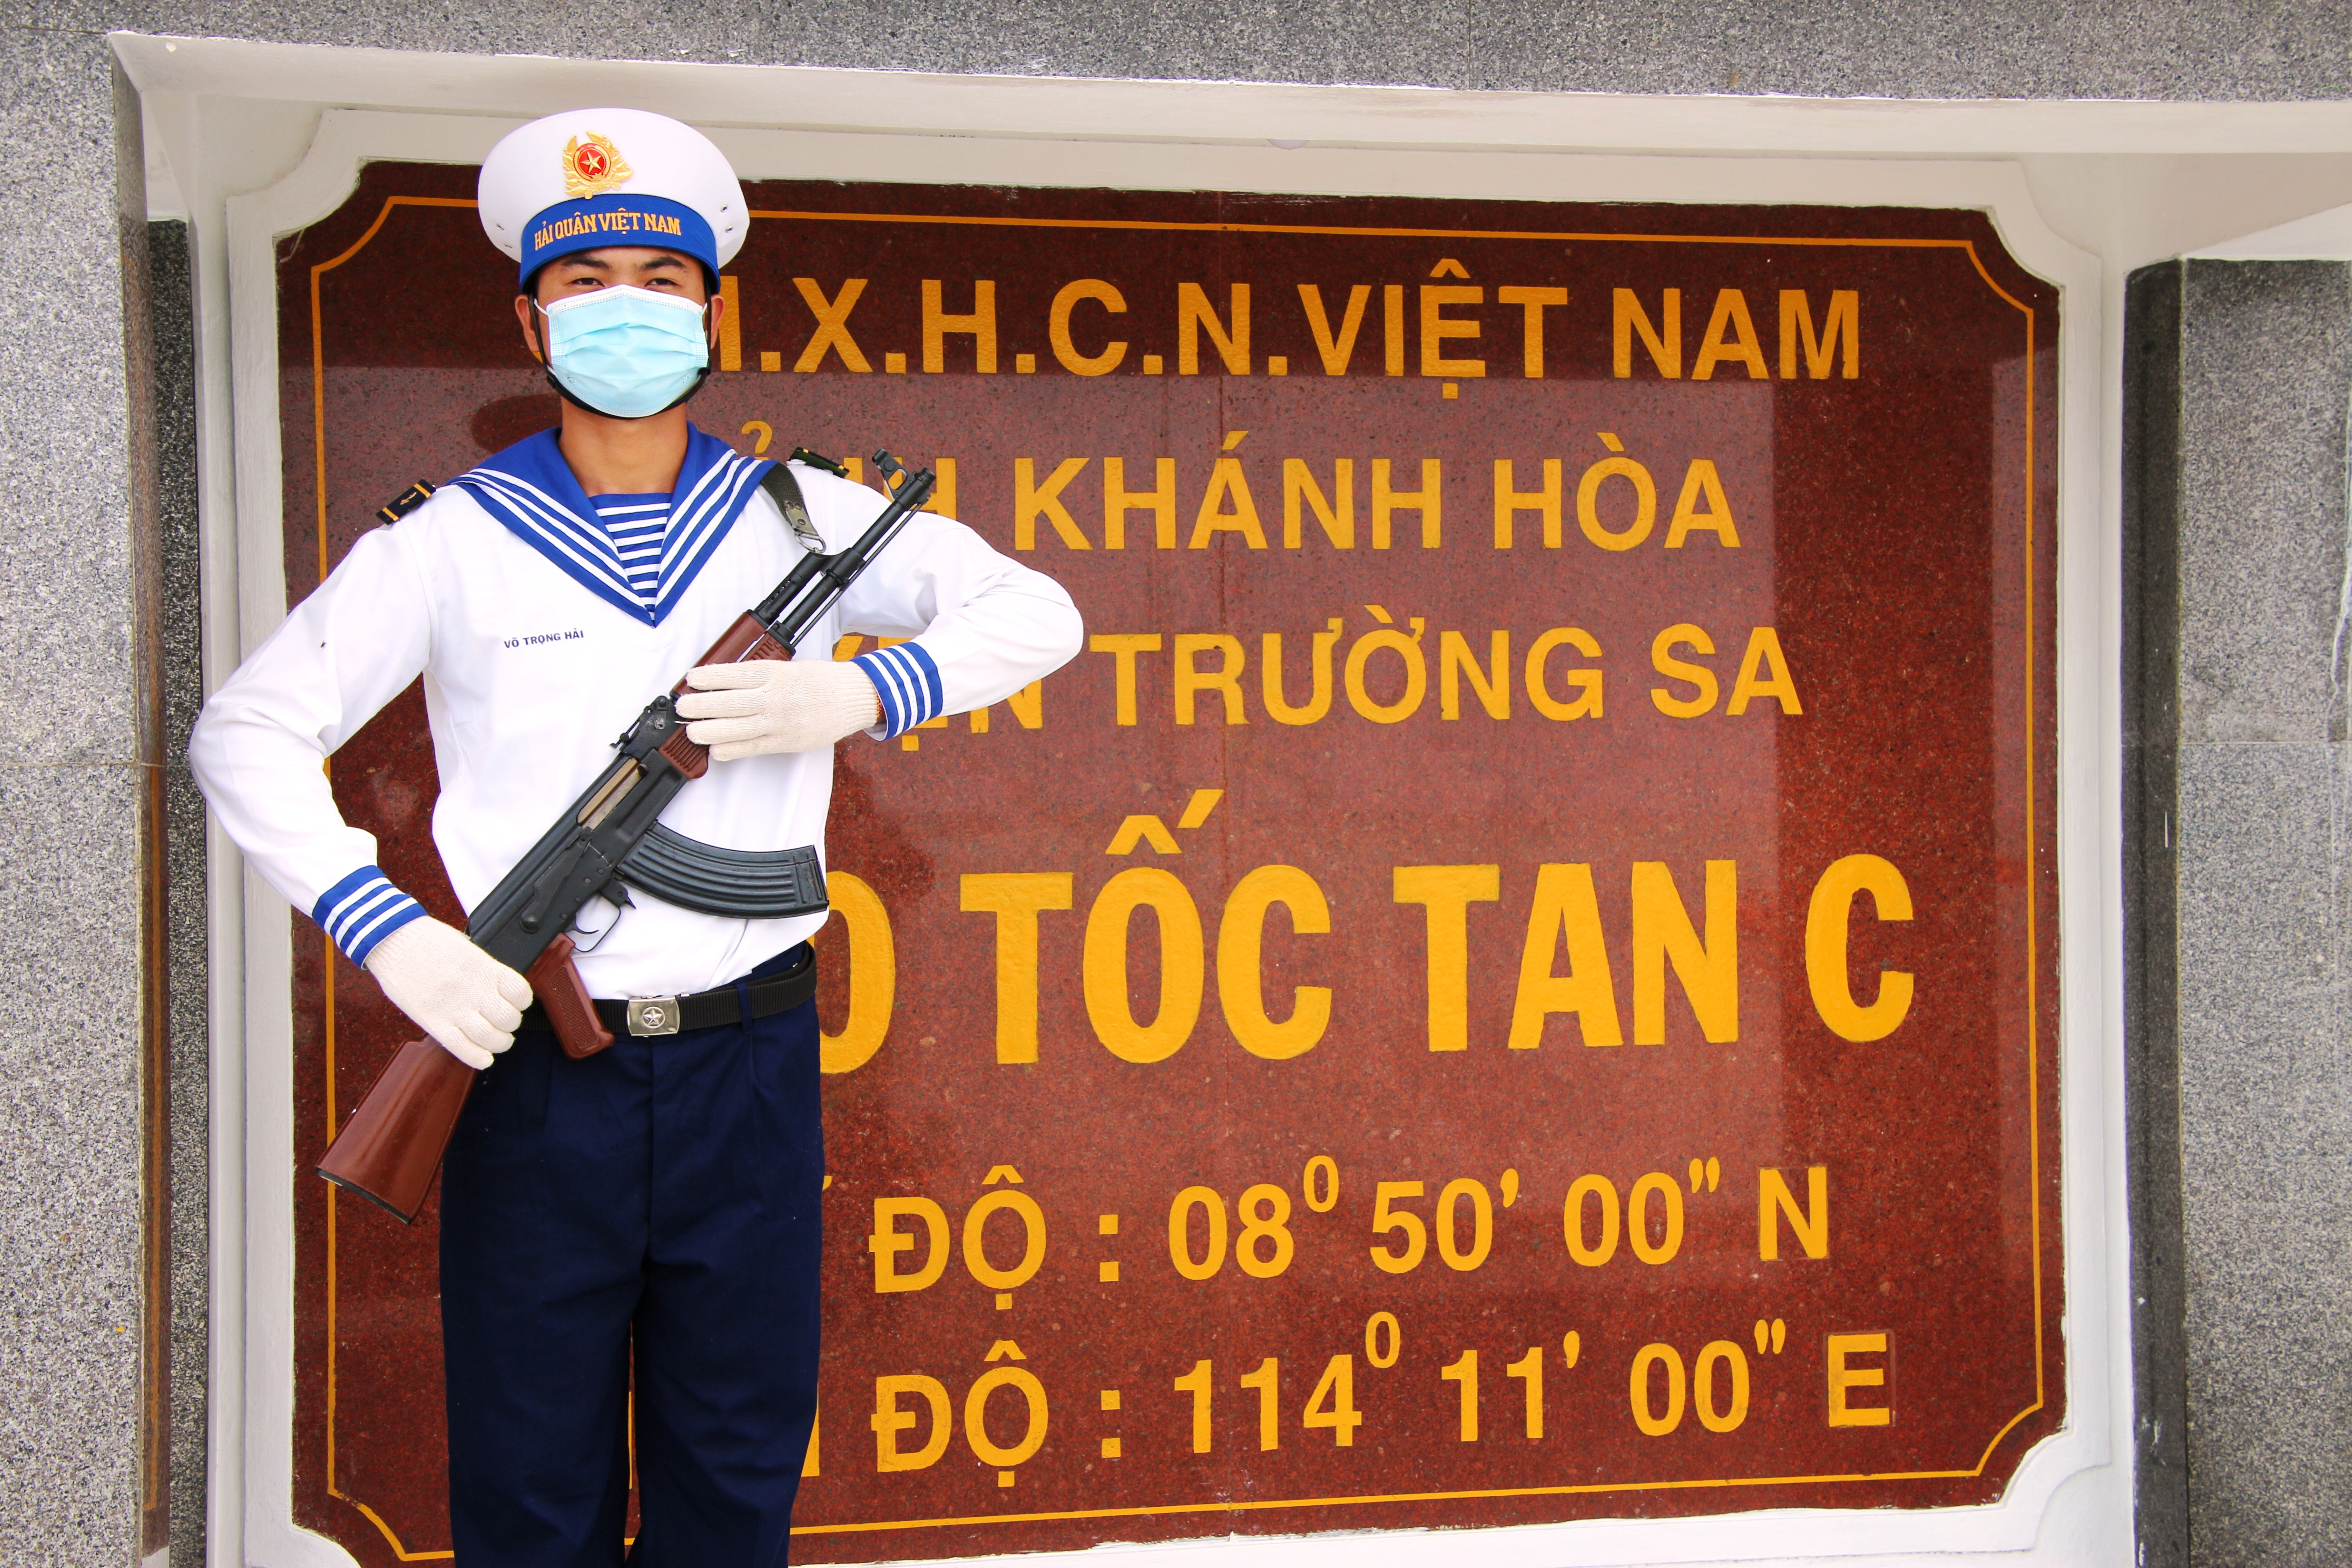 Trung sĩ Võ Trọng Hải đứng gác tại đảo Tốc Tan C